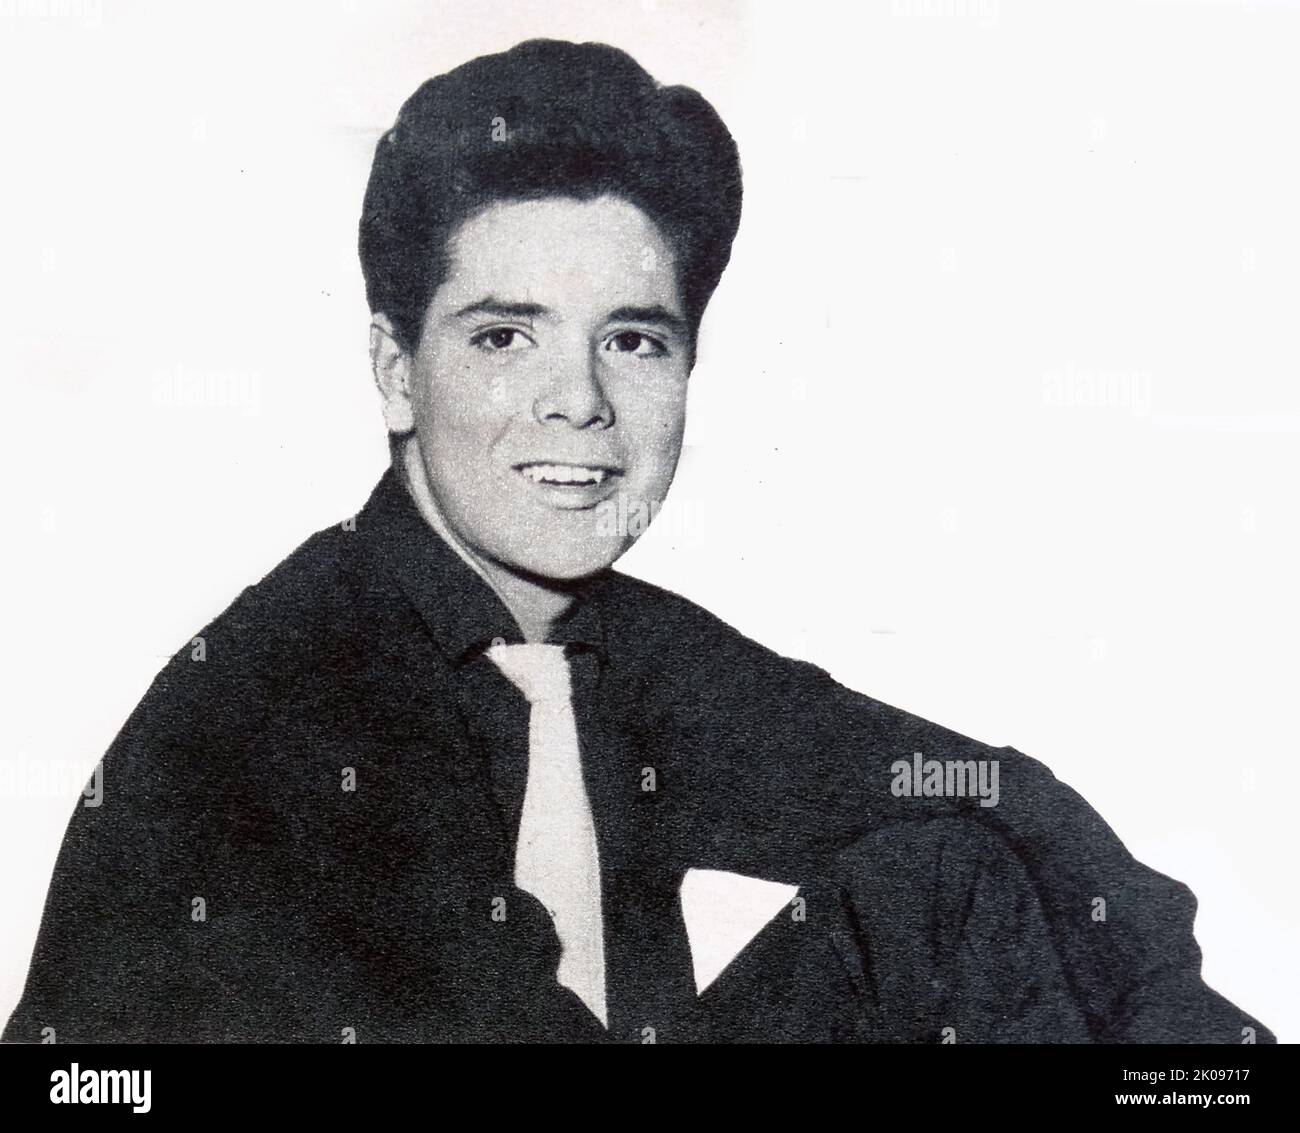 Cliff Richard. Sir Cliff Richard OBE (Harry Rodger Webb, 14 ottobre 1940) è un . Ha venduto più di 250 milioni di dischi in tutto il mondo, rendendolo uno dei più venduti artisti musicali di tutti i tempi. Ha un totale di vendite di oltre 21,5 milioni di singoli nel Regno Unito ed è il terzo artista più venduto nella storia di UK Singles Chart, dietro The Beatles ed Elvis Presley. Foto Stock